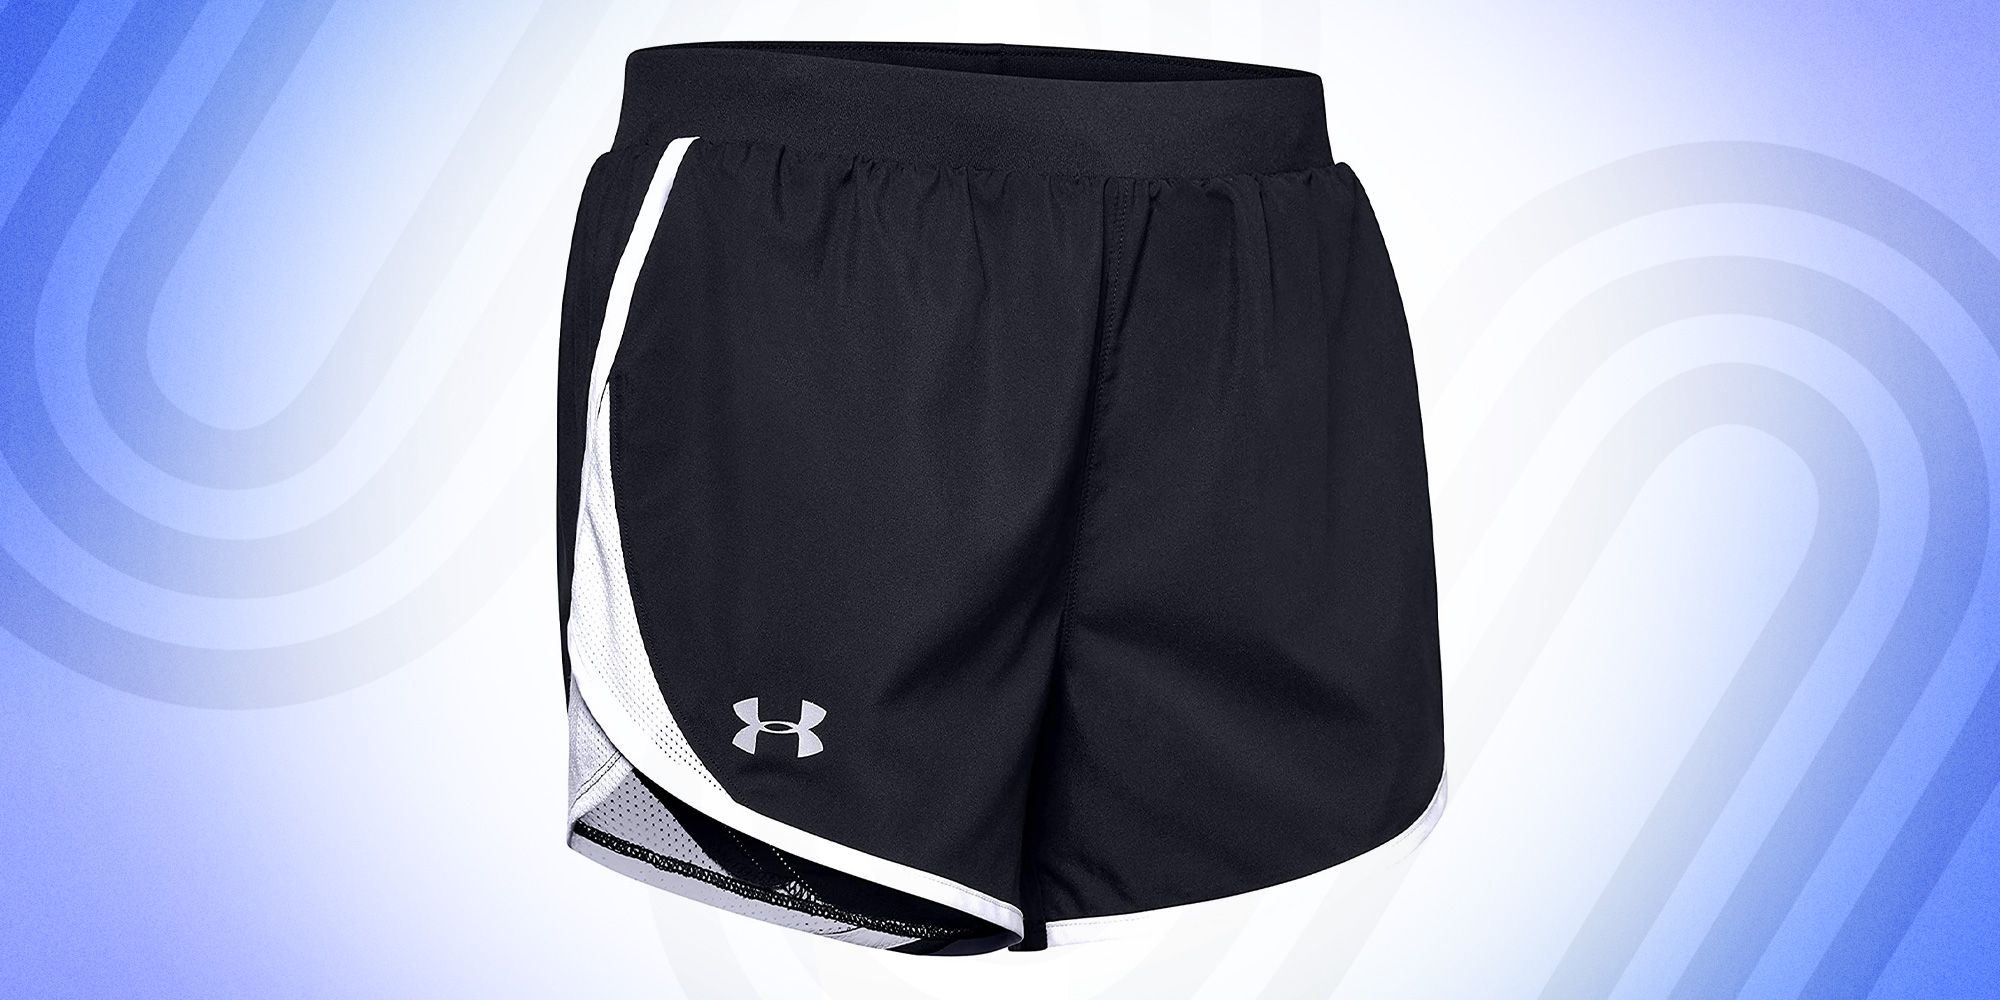 FANSHONN Men Summer Sports Quick-Drying Shorts with Zip Pockets Running Short Pants